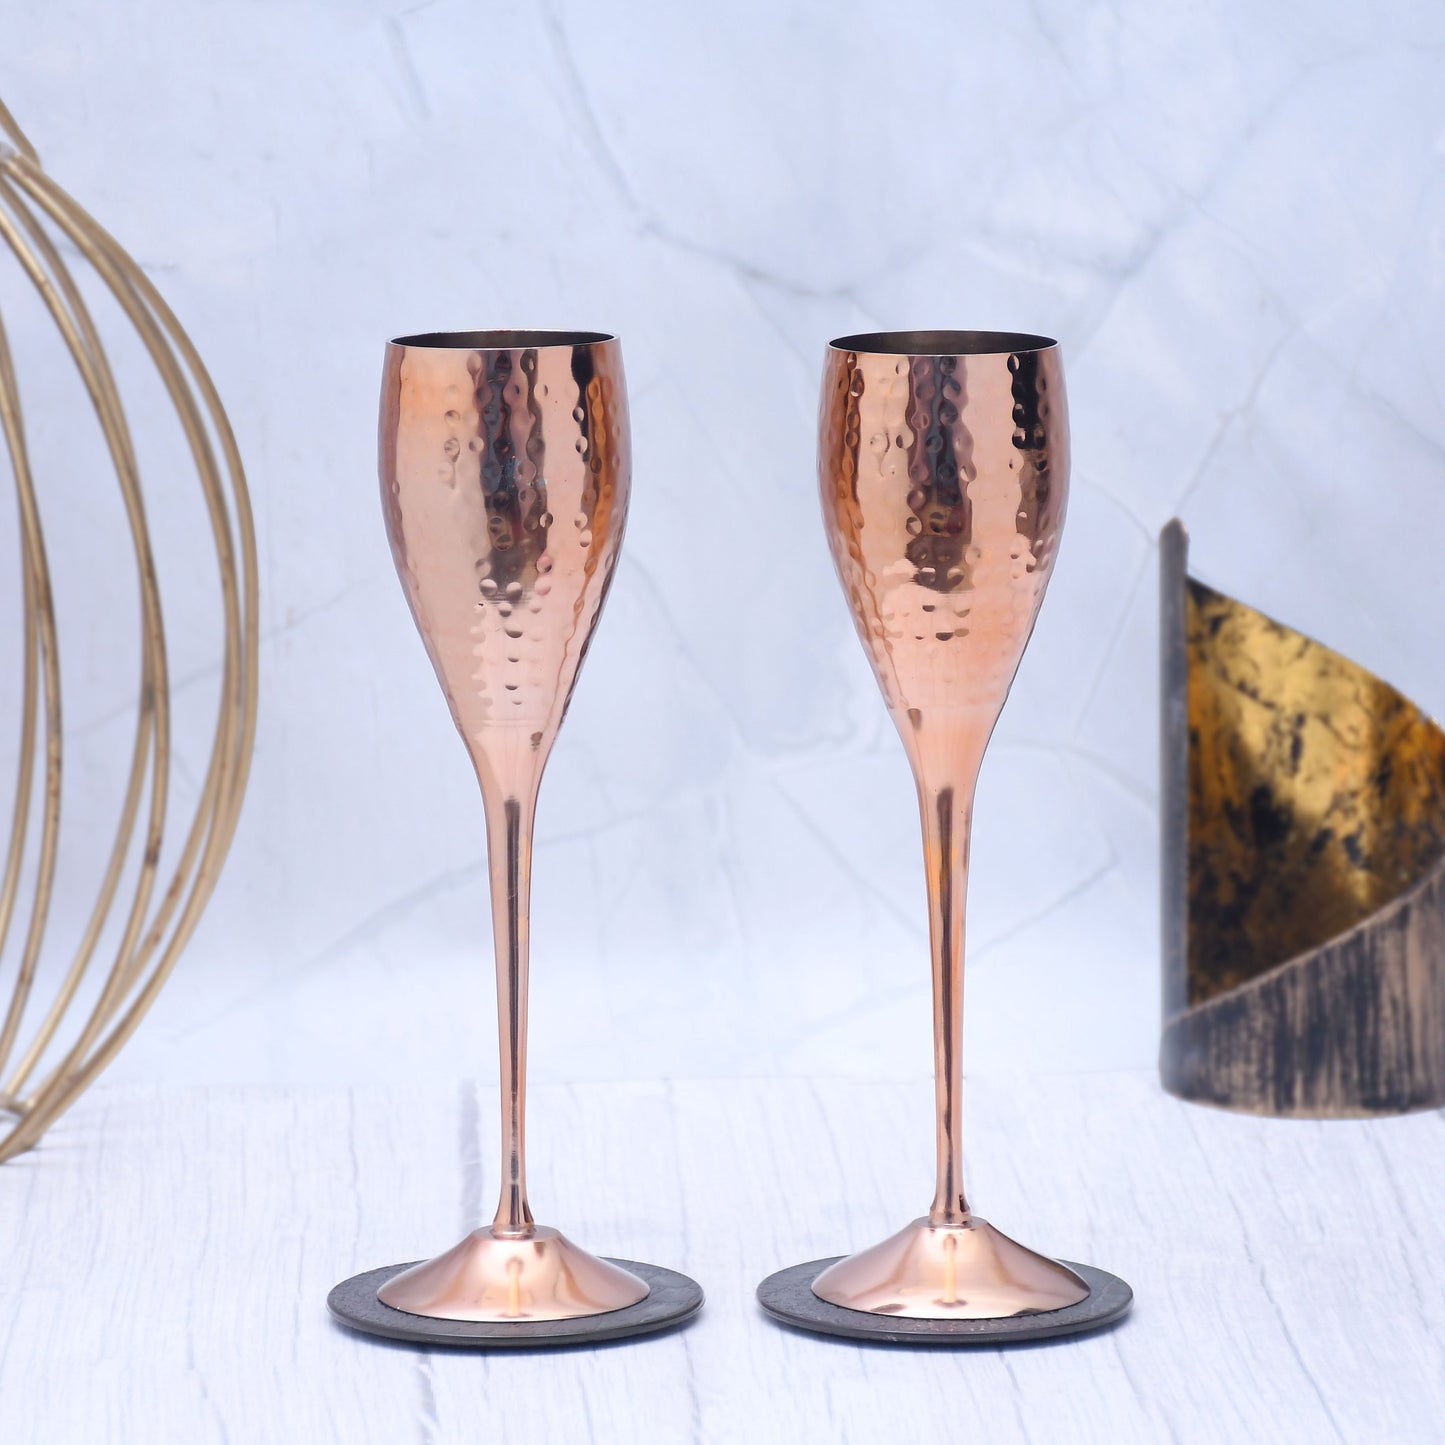 SAMA Homes - beautifully designed copper utensils copper goblet glasses set of 3